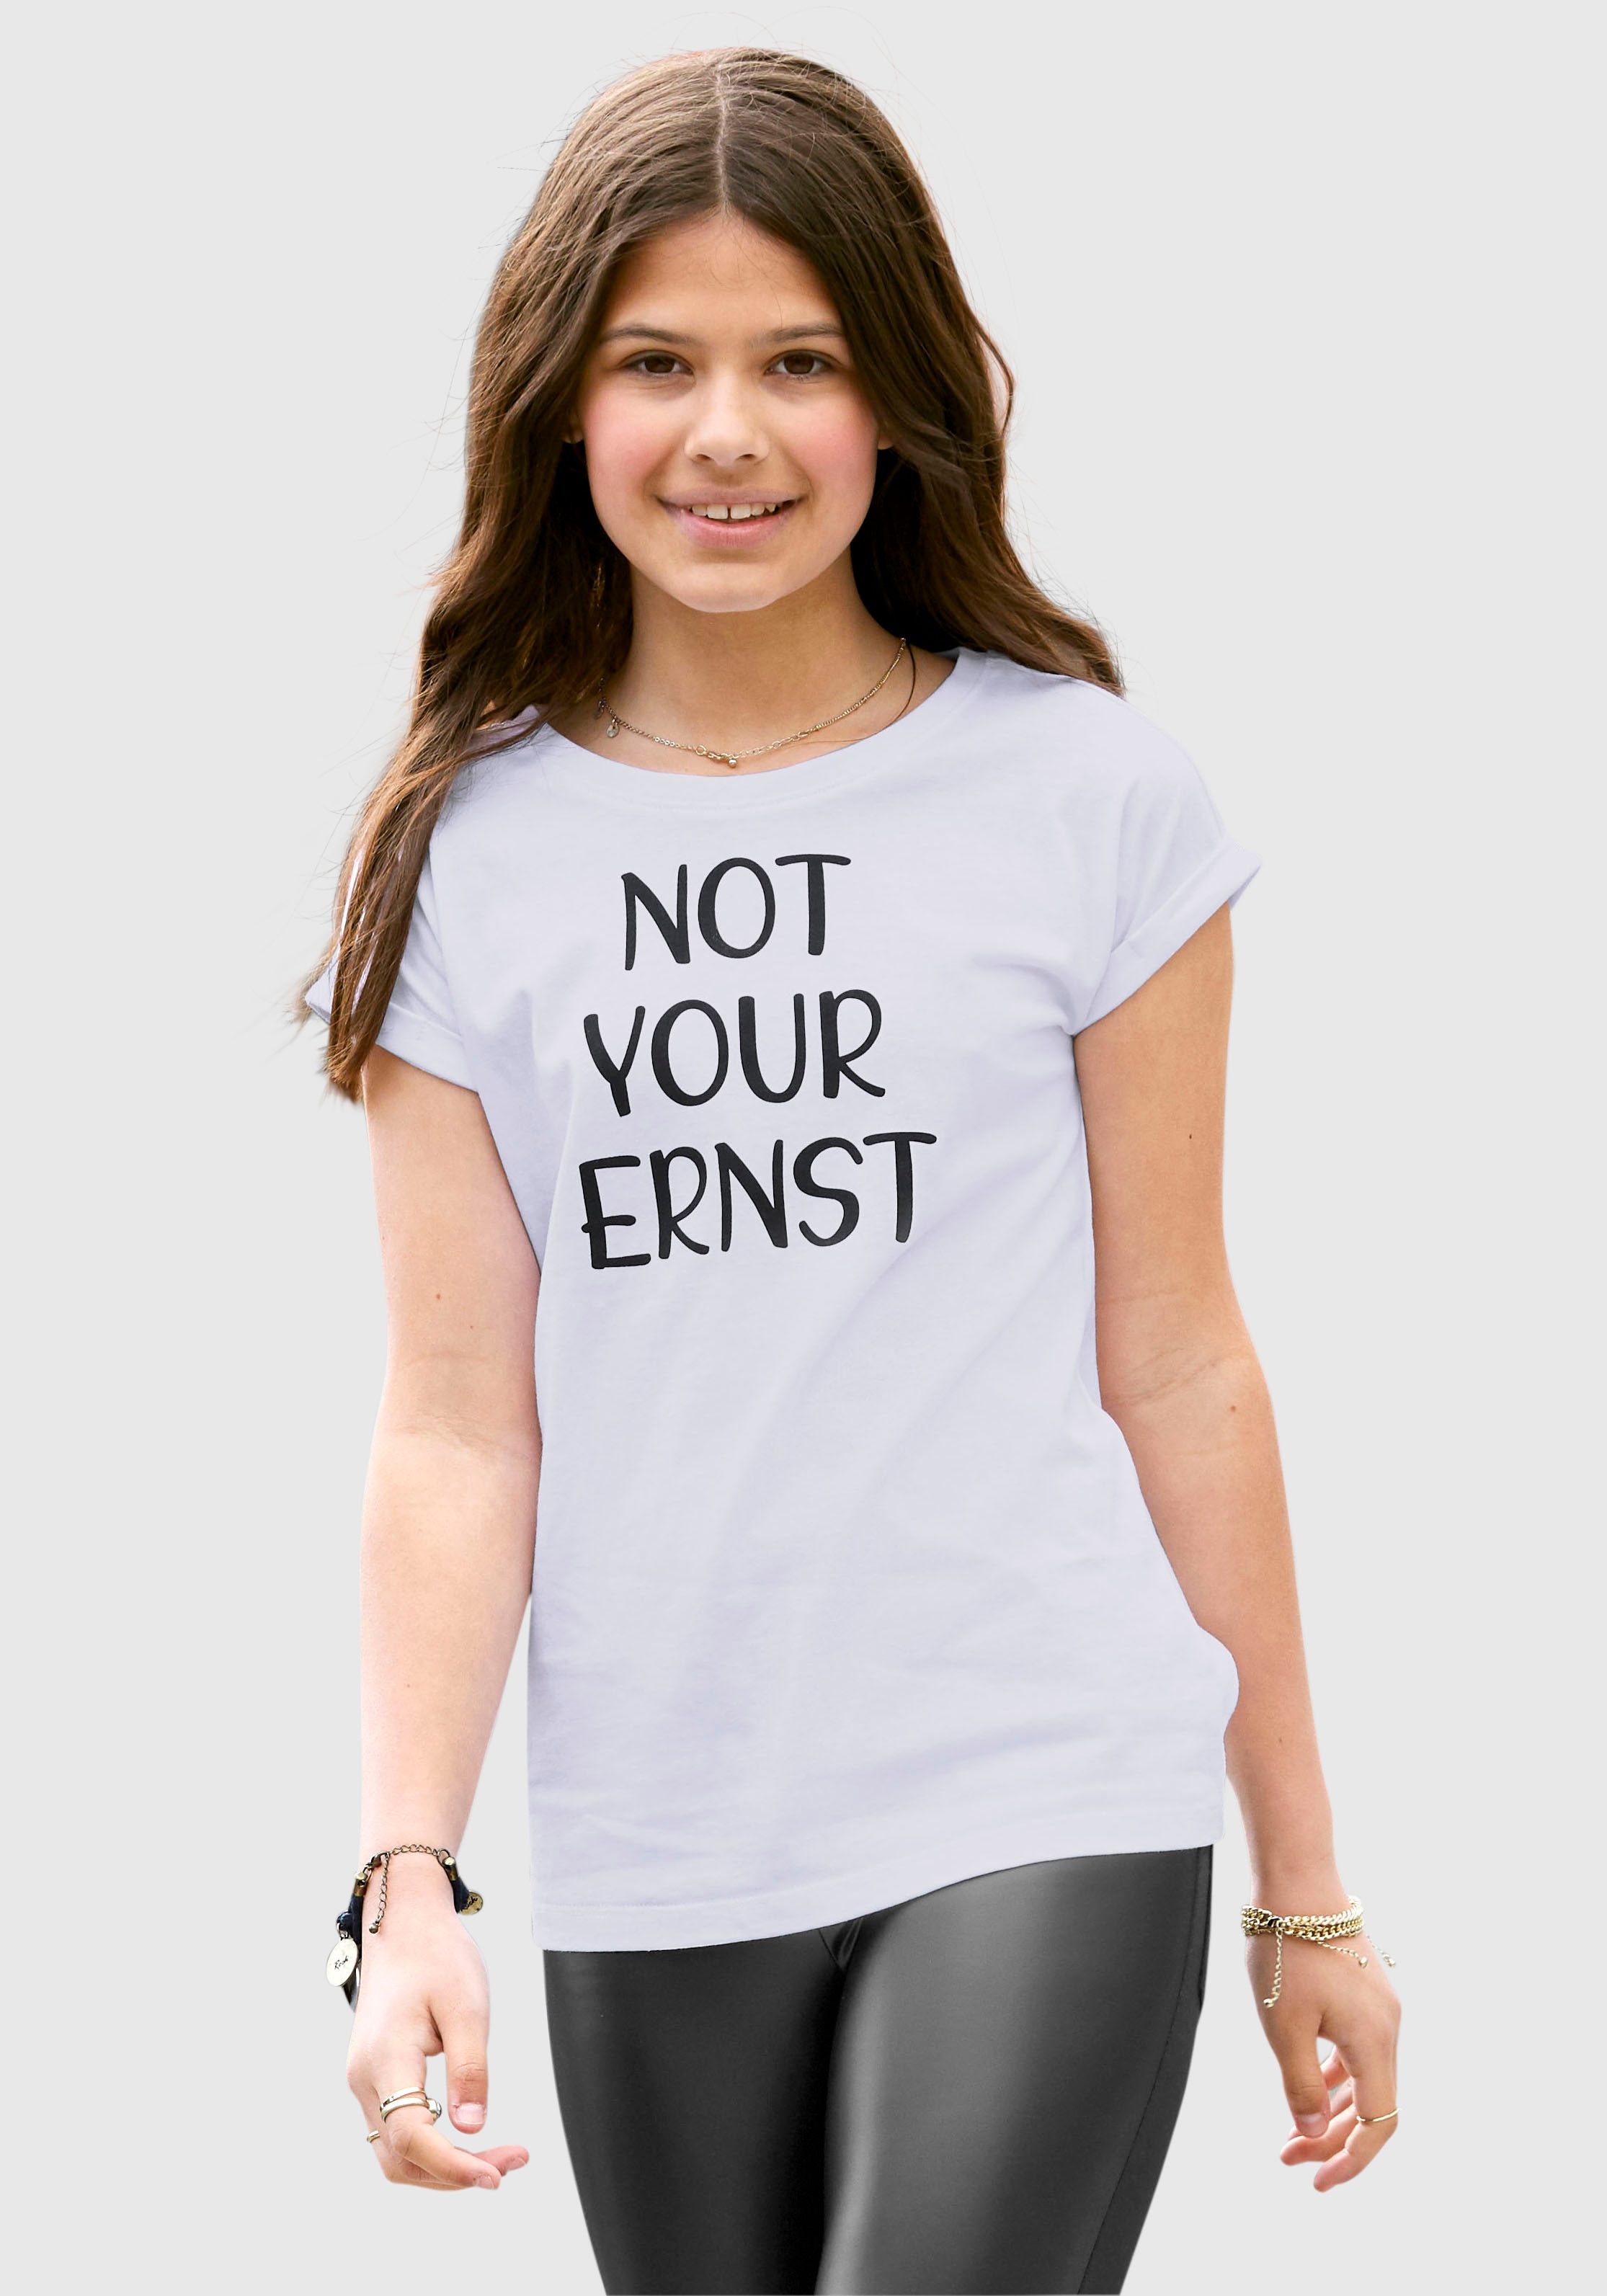 KIDSWORLD T-Shirt YOUR kleinem »NOT ERNST«, bei Ärmelaufschlag mit legere bestellen OTTO Form